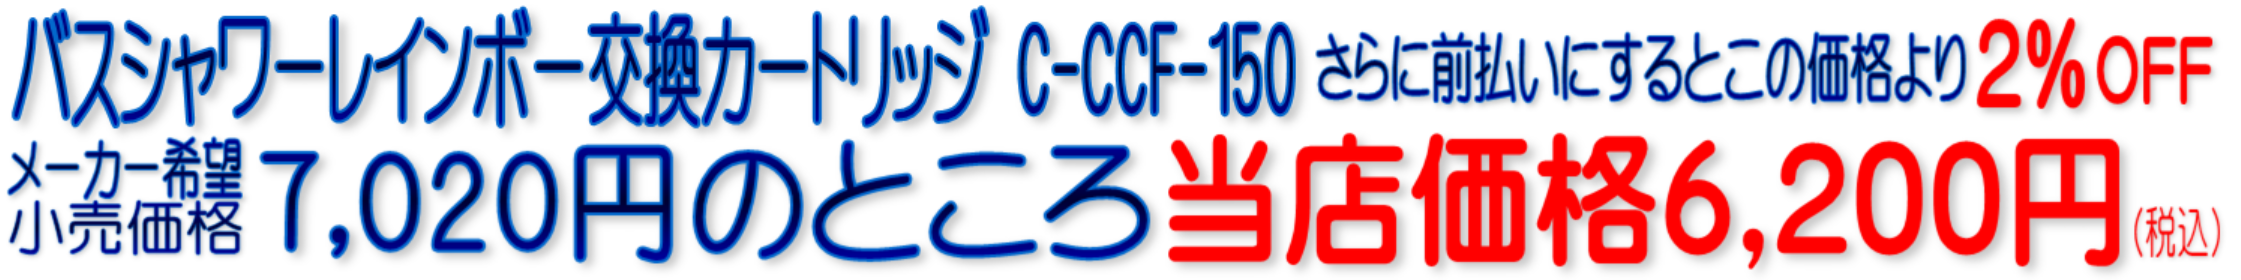 C-CCF-150